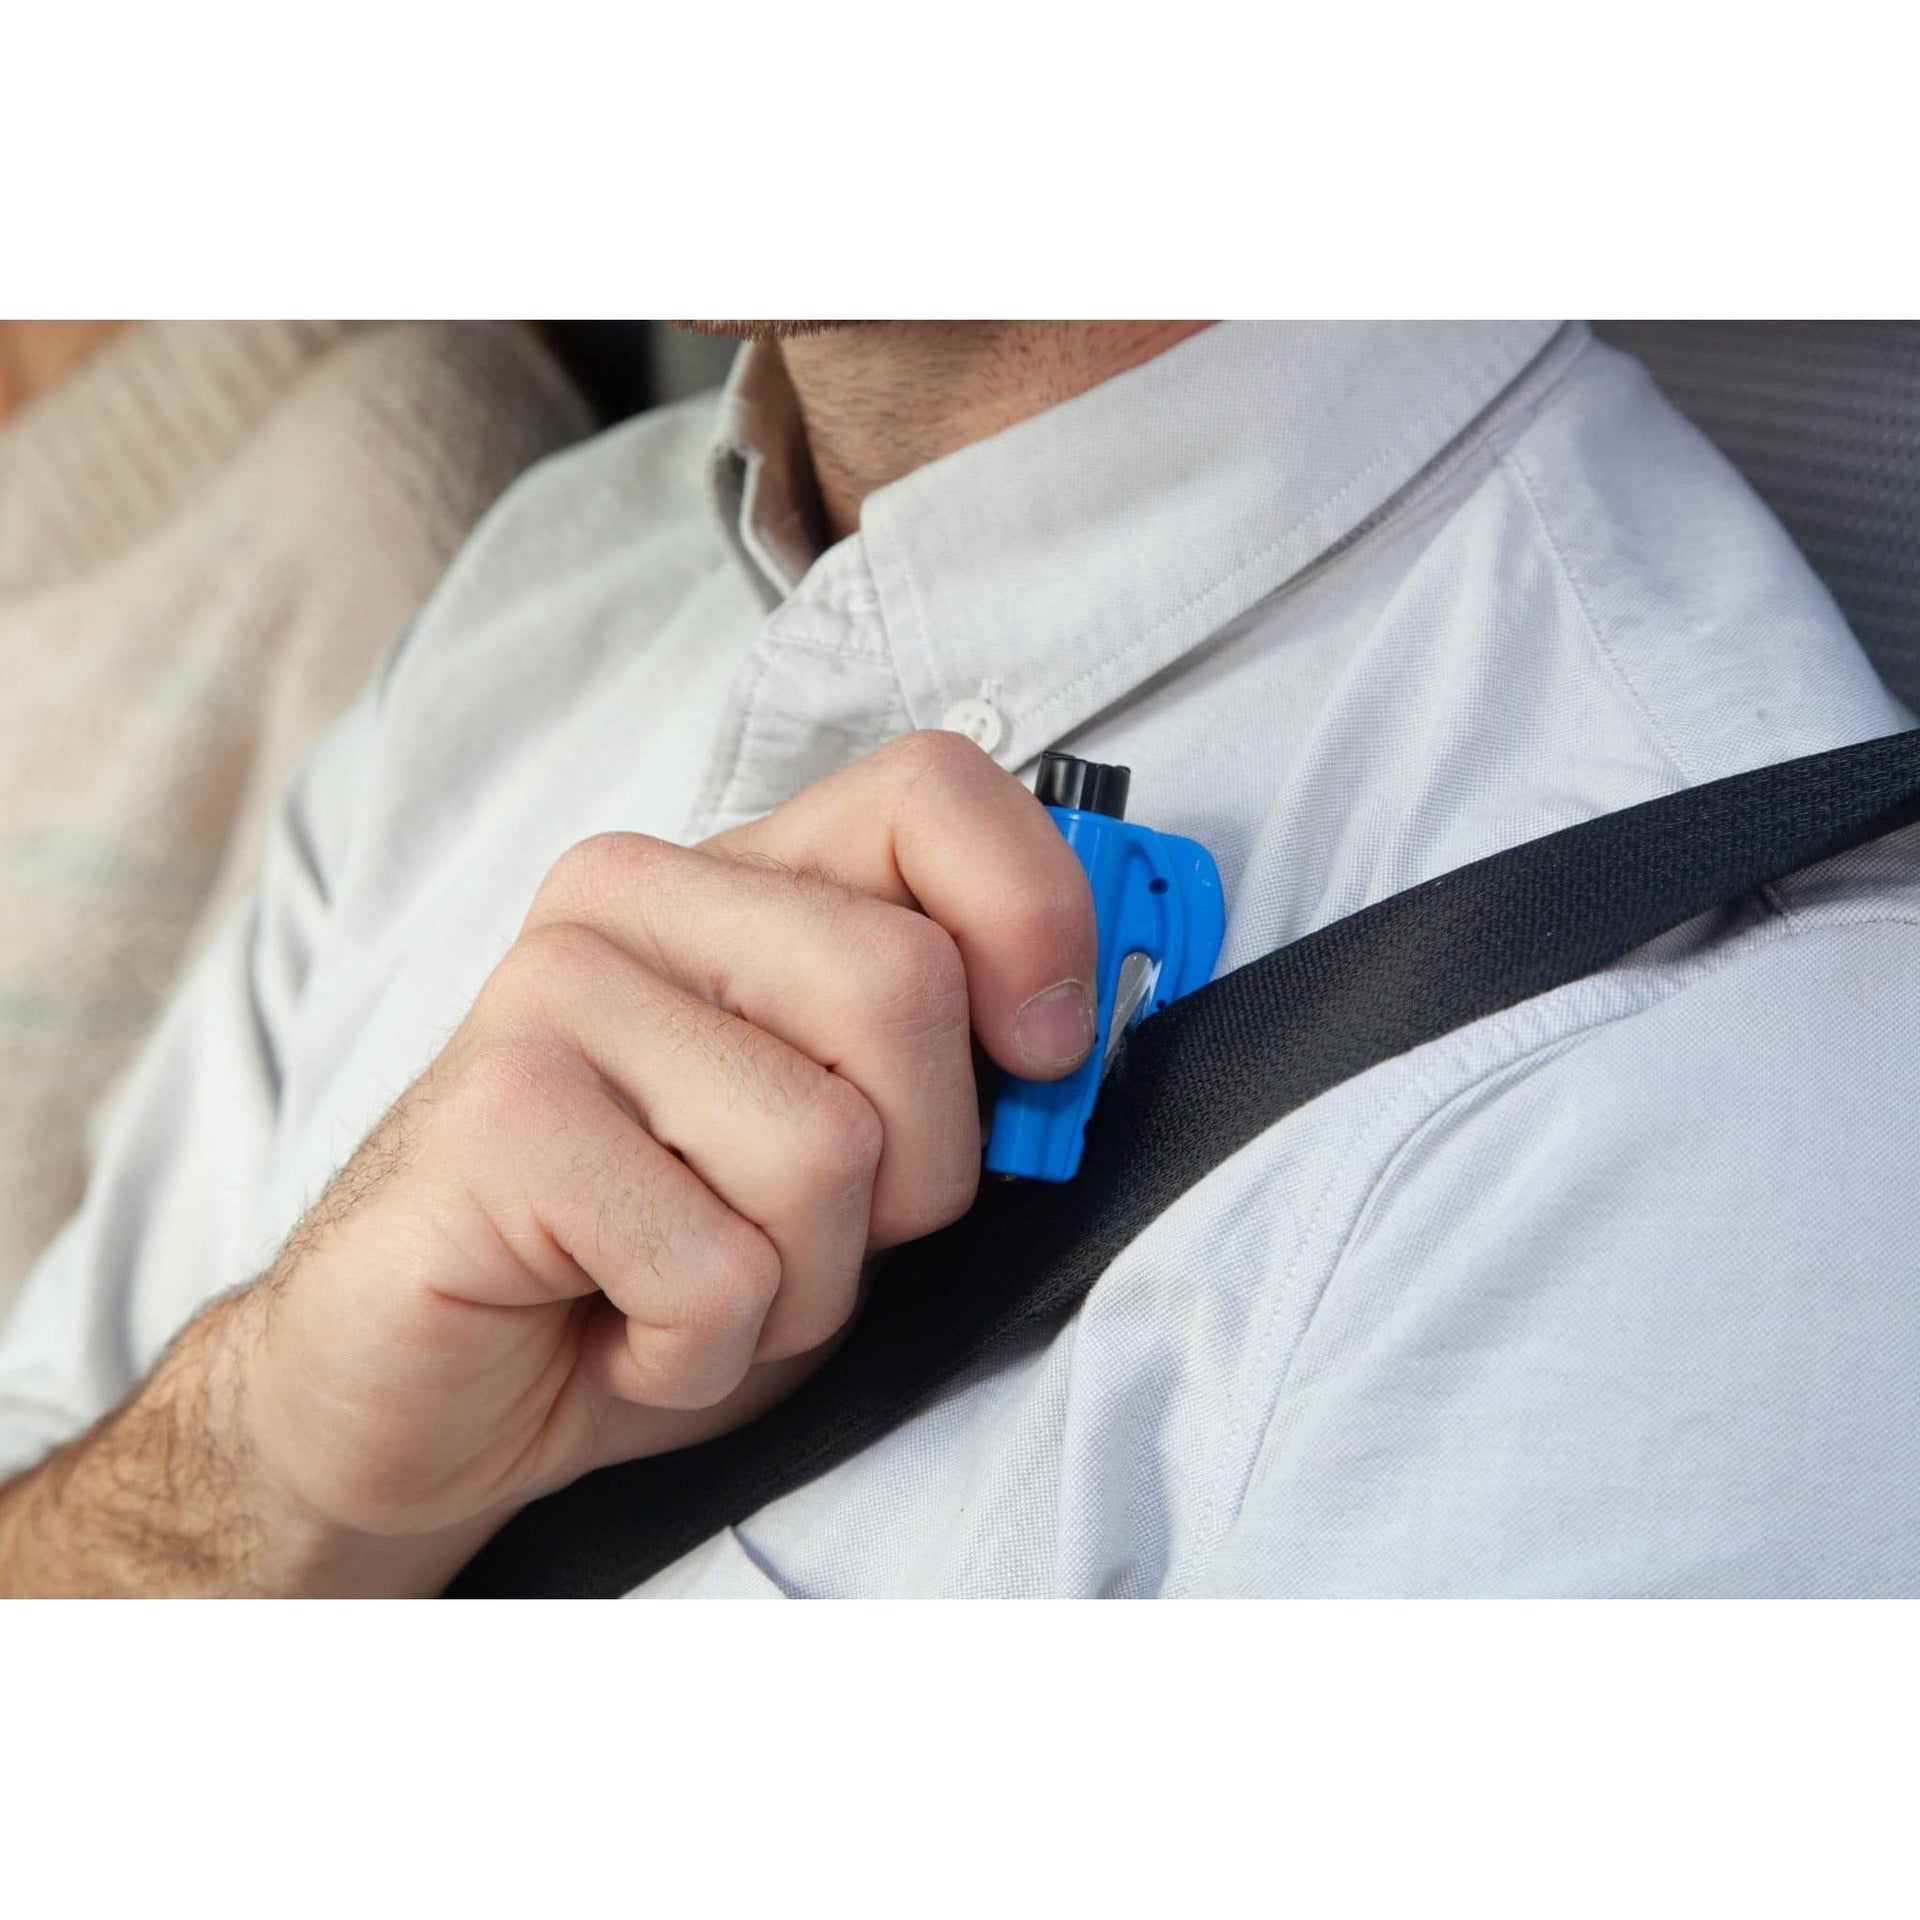 RESQME Car Escape Tool - Glass Breaker & Seat Belt Cutter